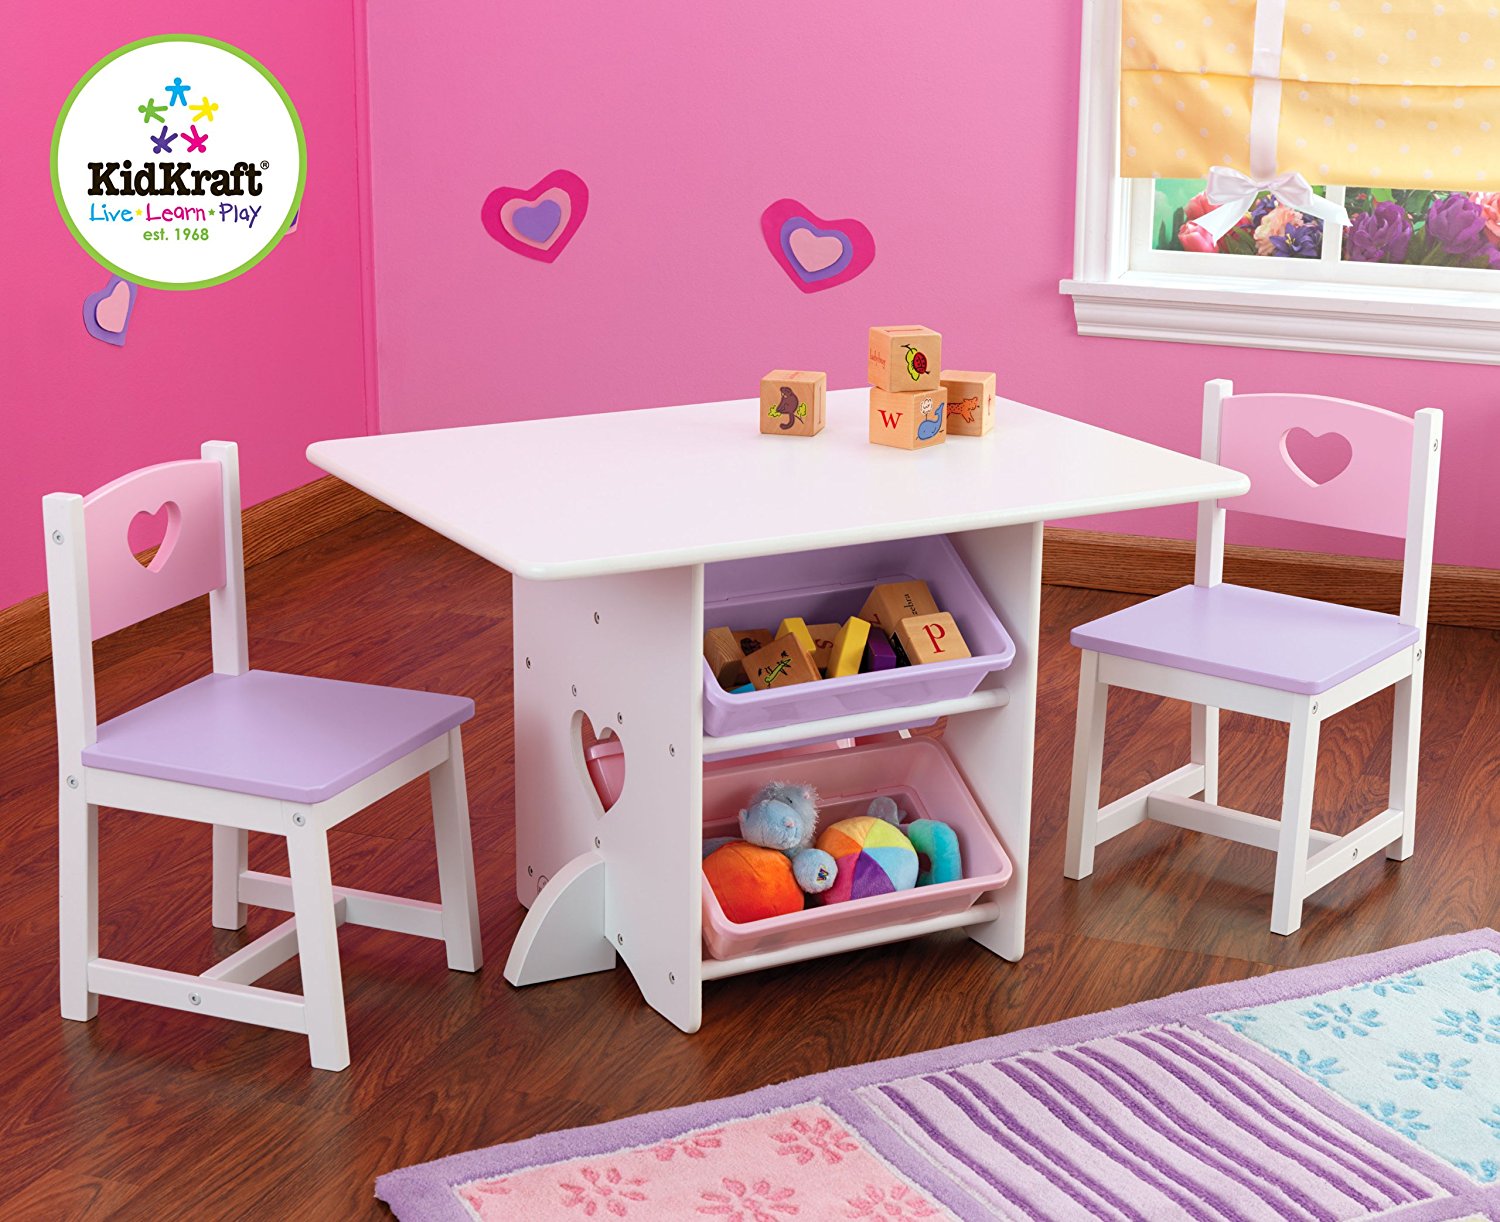 Набор детской мебели Heart: стол, 2 стула и 4 ящика  